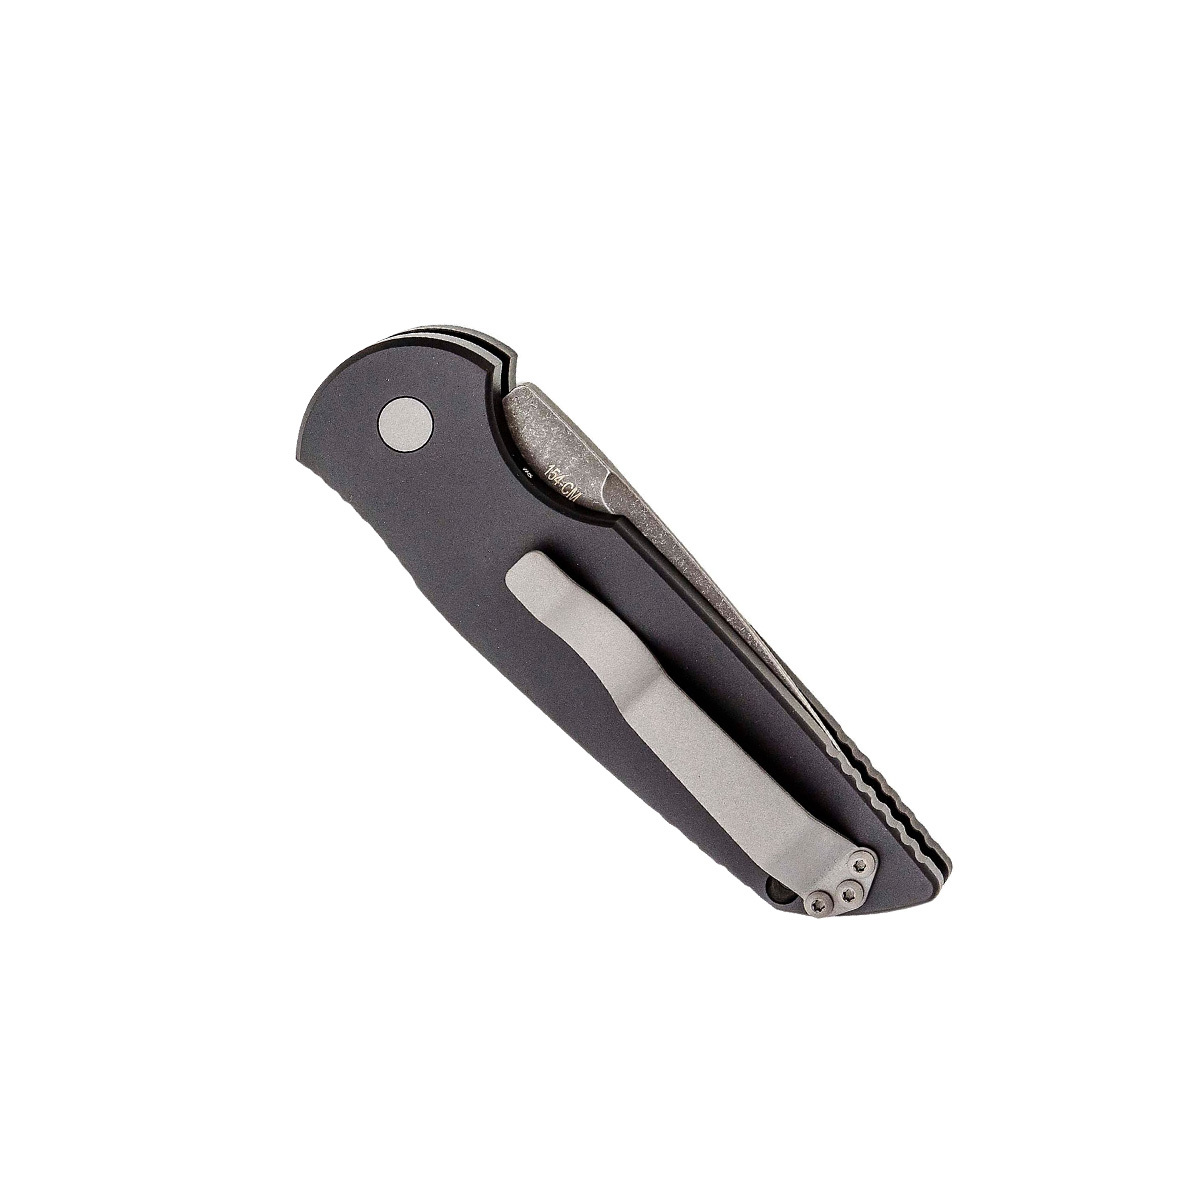 Складной автоматический нож Pro-Tech Tactical Response, сталь 154CM, рукоять алюминий/серебро - фото 2